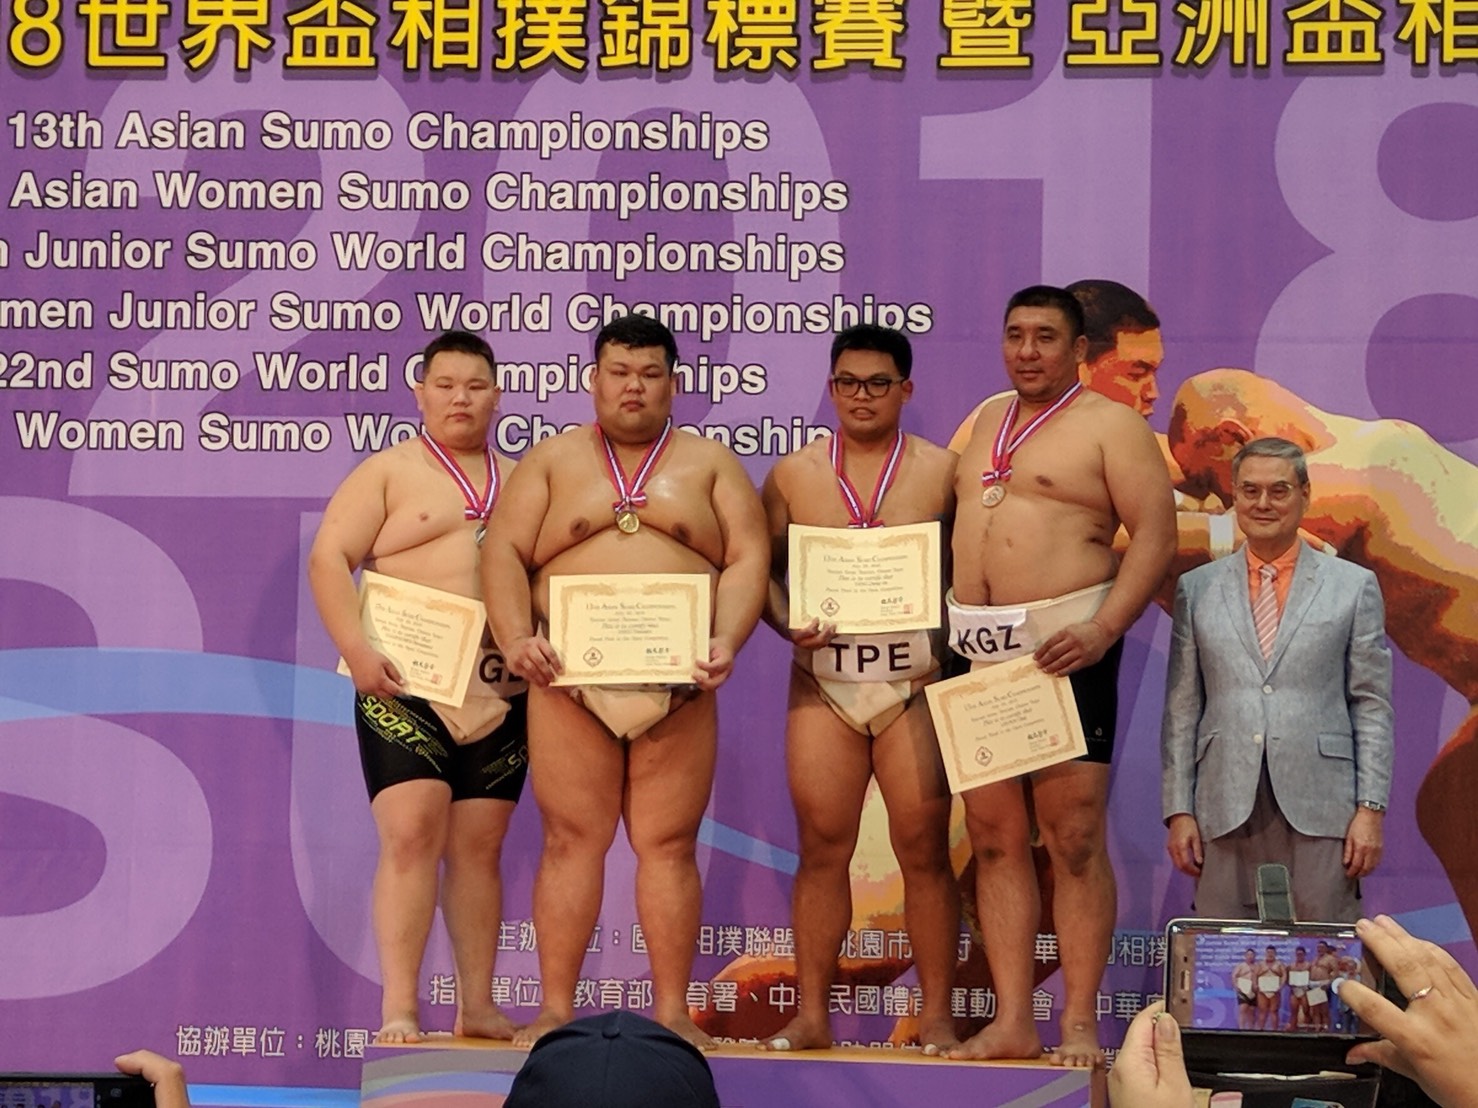 第十三屆亞洲相撲錦標賽暨第八屆亞洲女子相撲錦標在桃園 日本大獲全勝